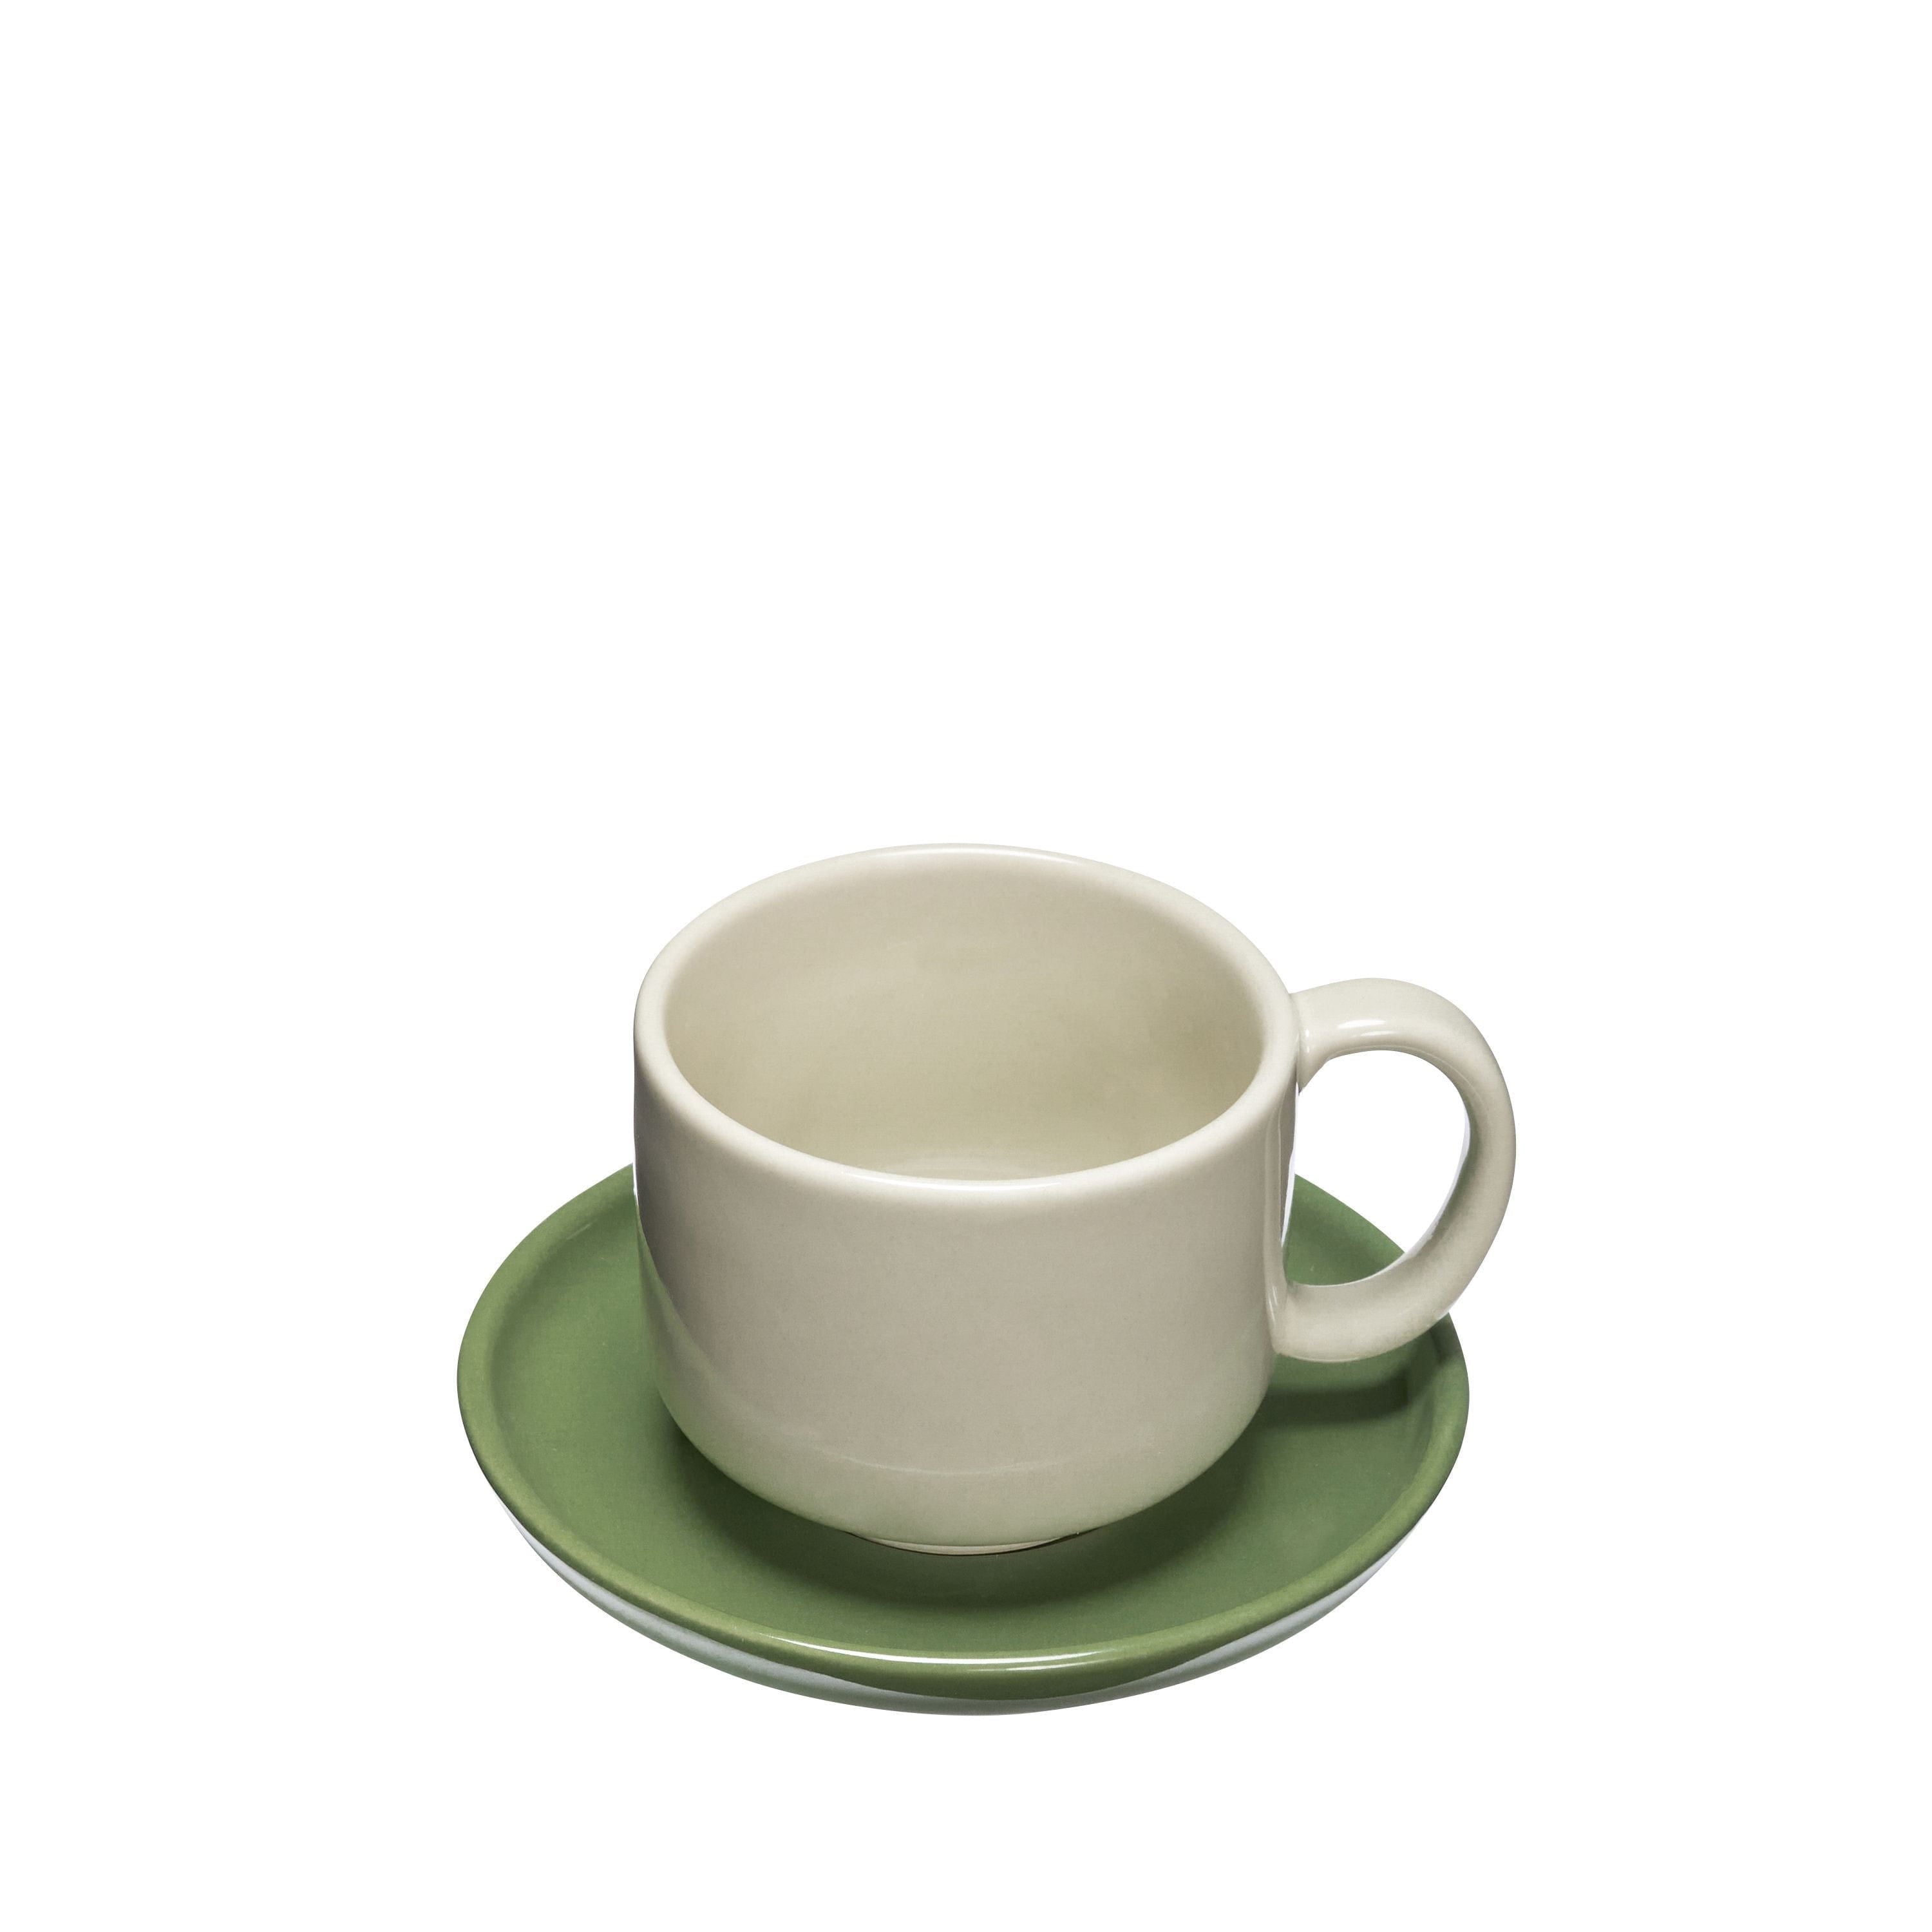 Hübsch Amare Mug & Saucer Set Of 2, Sand/Green